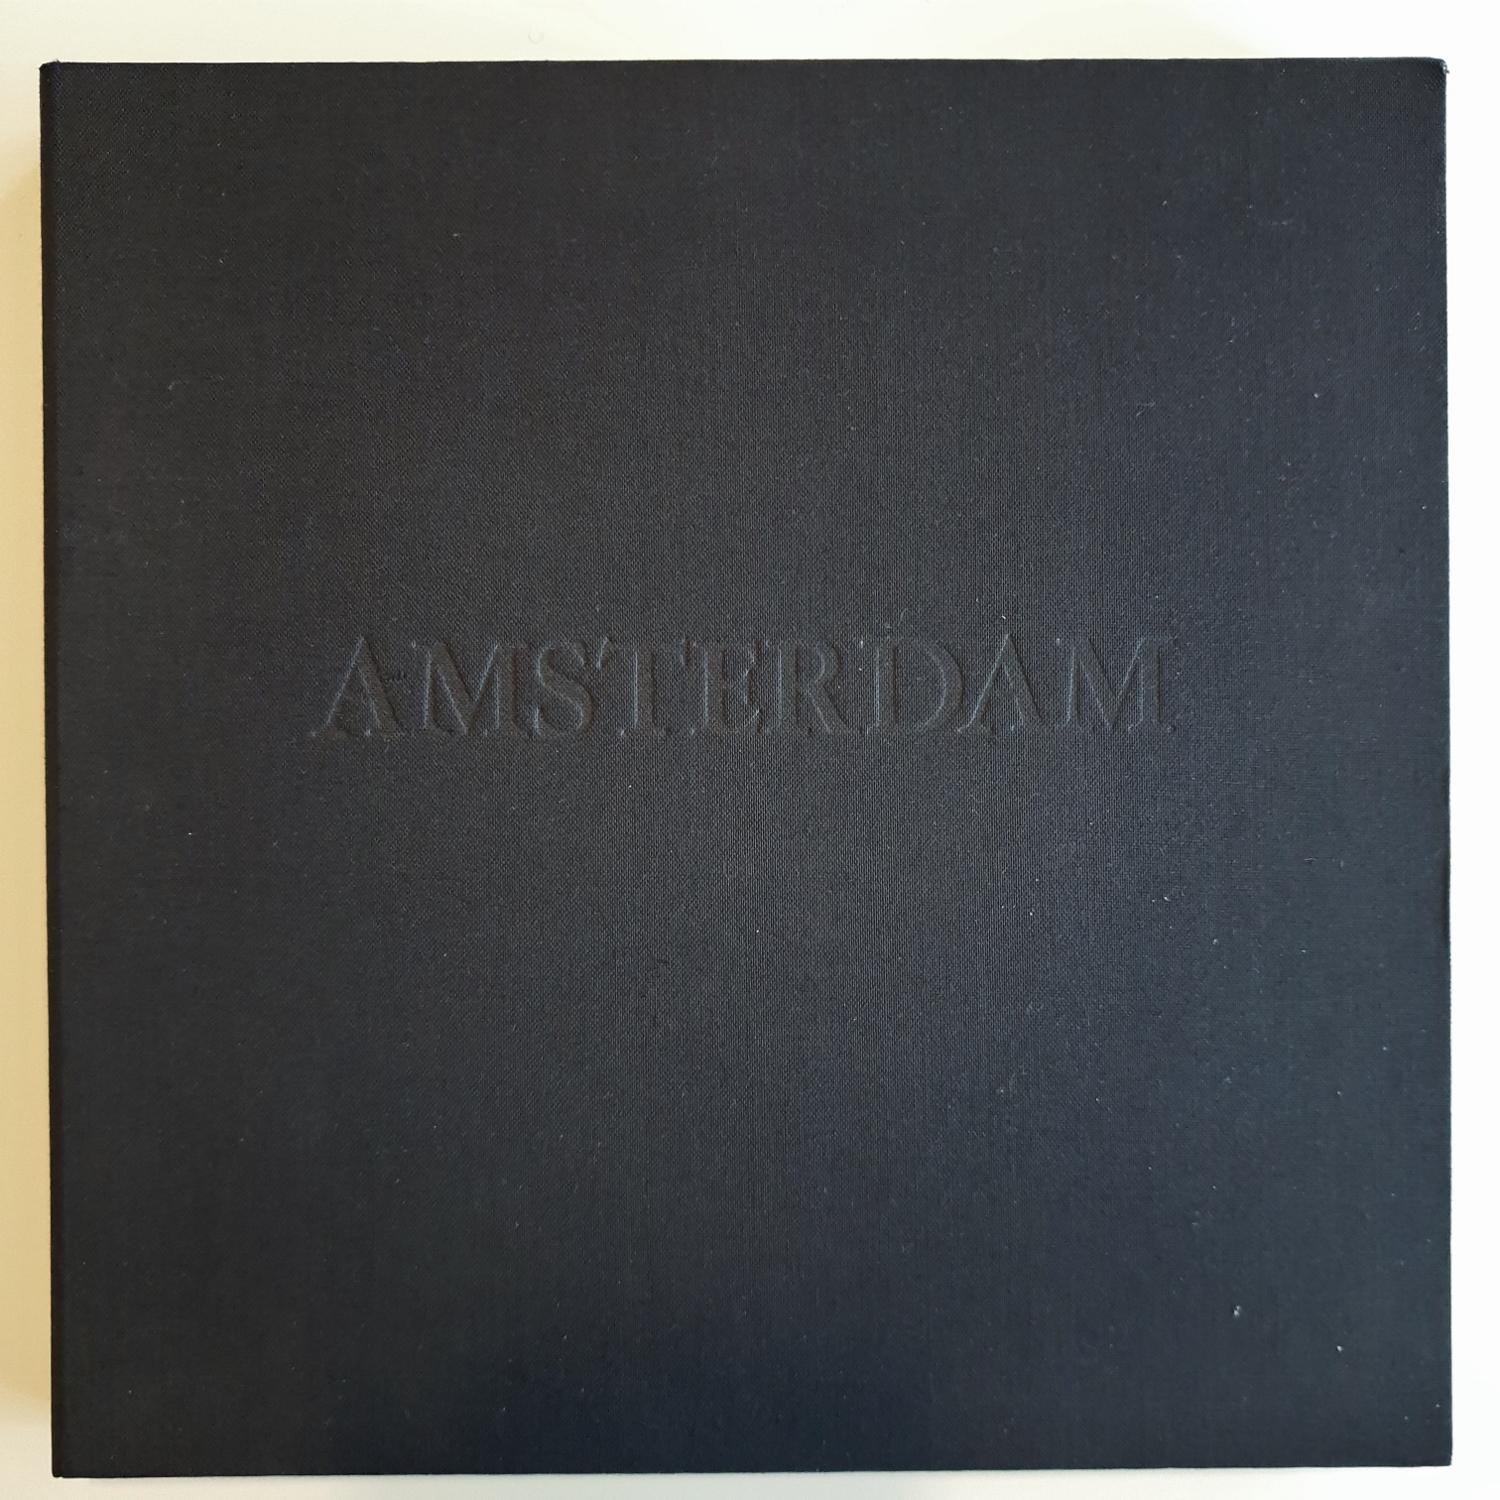 Amsterdam: Amsterdam  3/50- Sammlerschachtel mit zehn schwarz-weißen Aquatinta-Radierungen  – Print von Olivier Julia